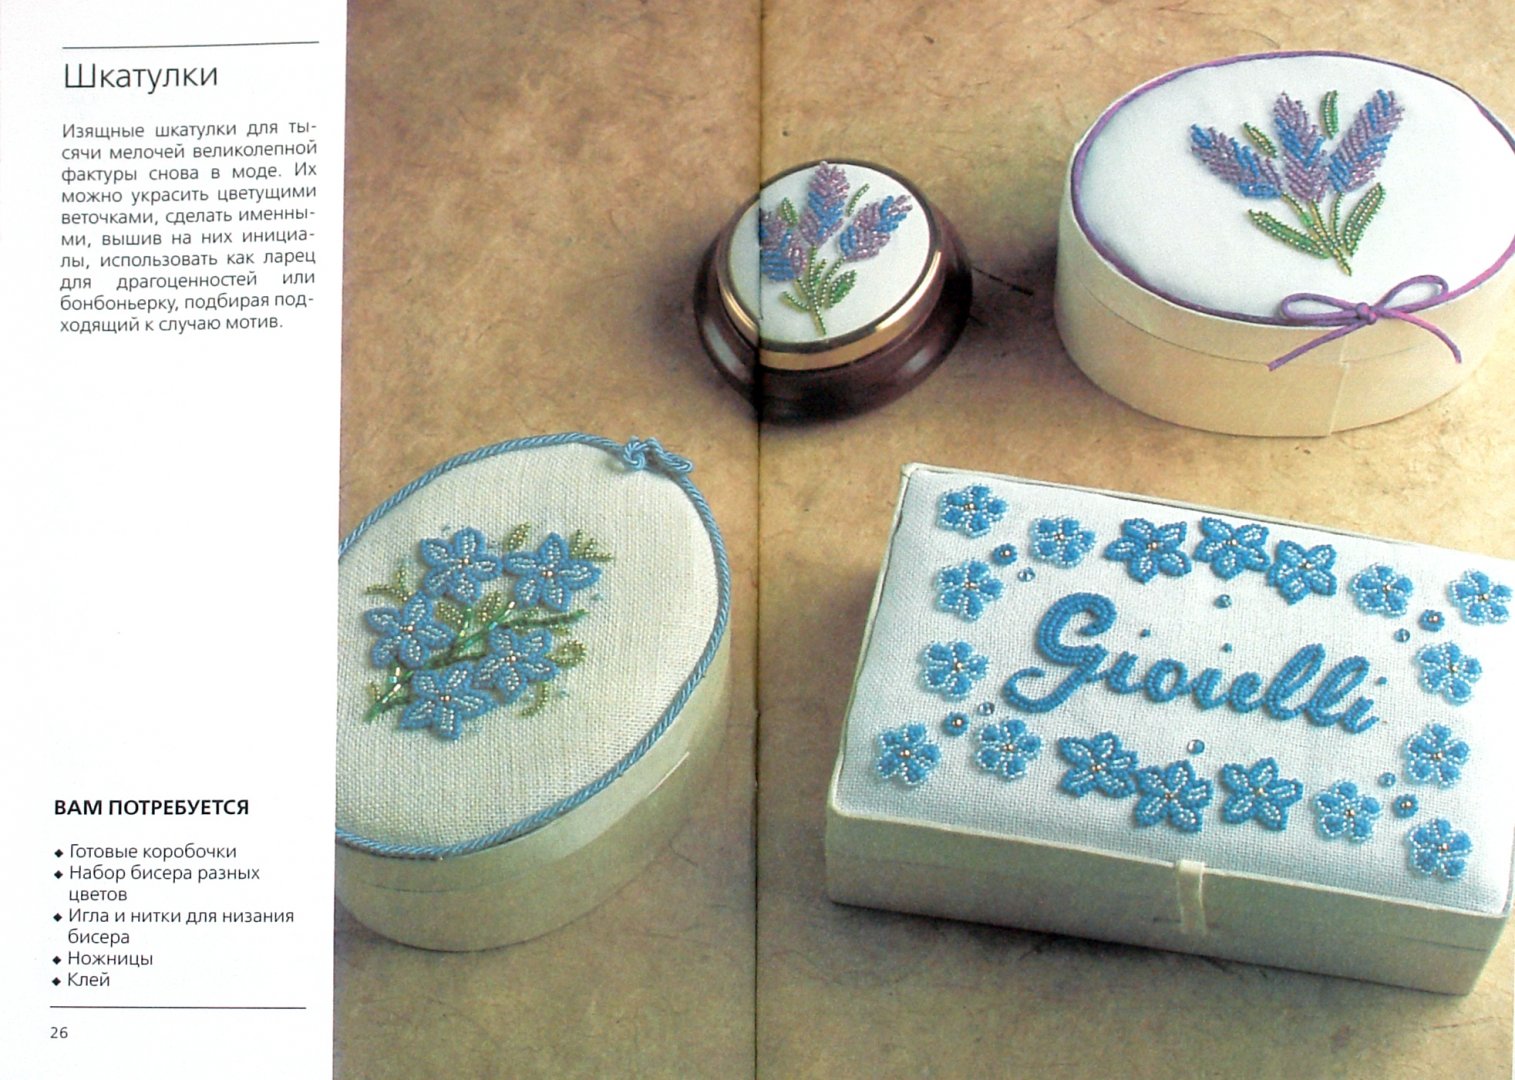 Иллюстрация 1 из 6 для Цветы, вышитые бисером: Оригинальные идеи, пошаговые инструкции | Лабиринт - книги. Источник: Лабиринт